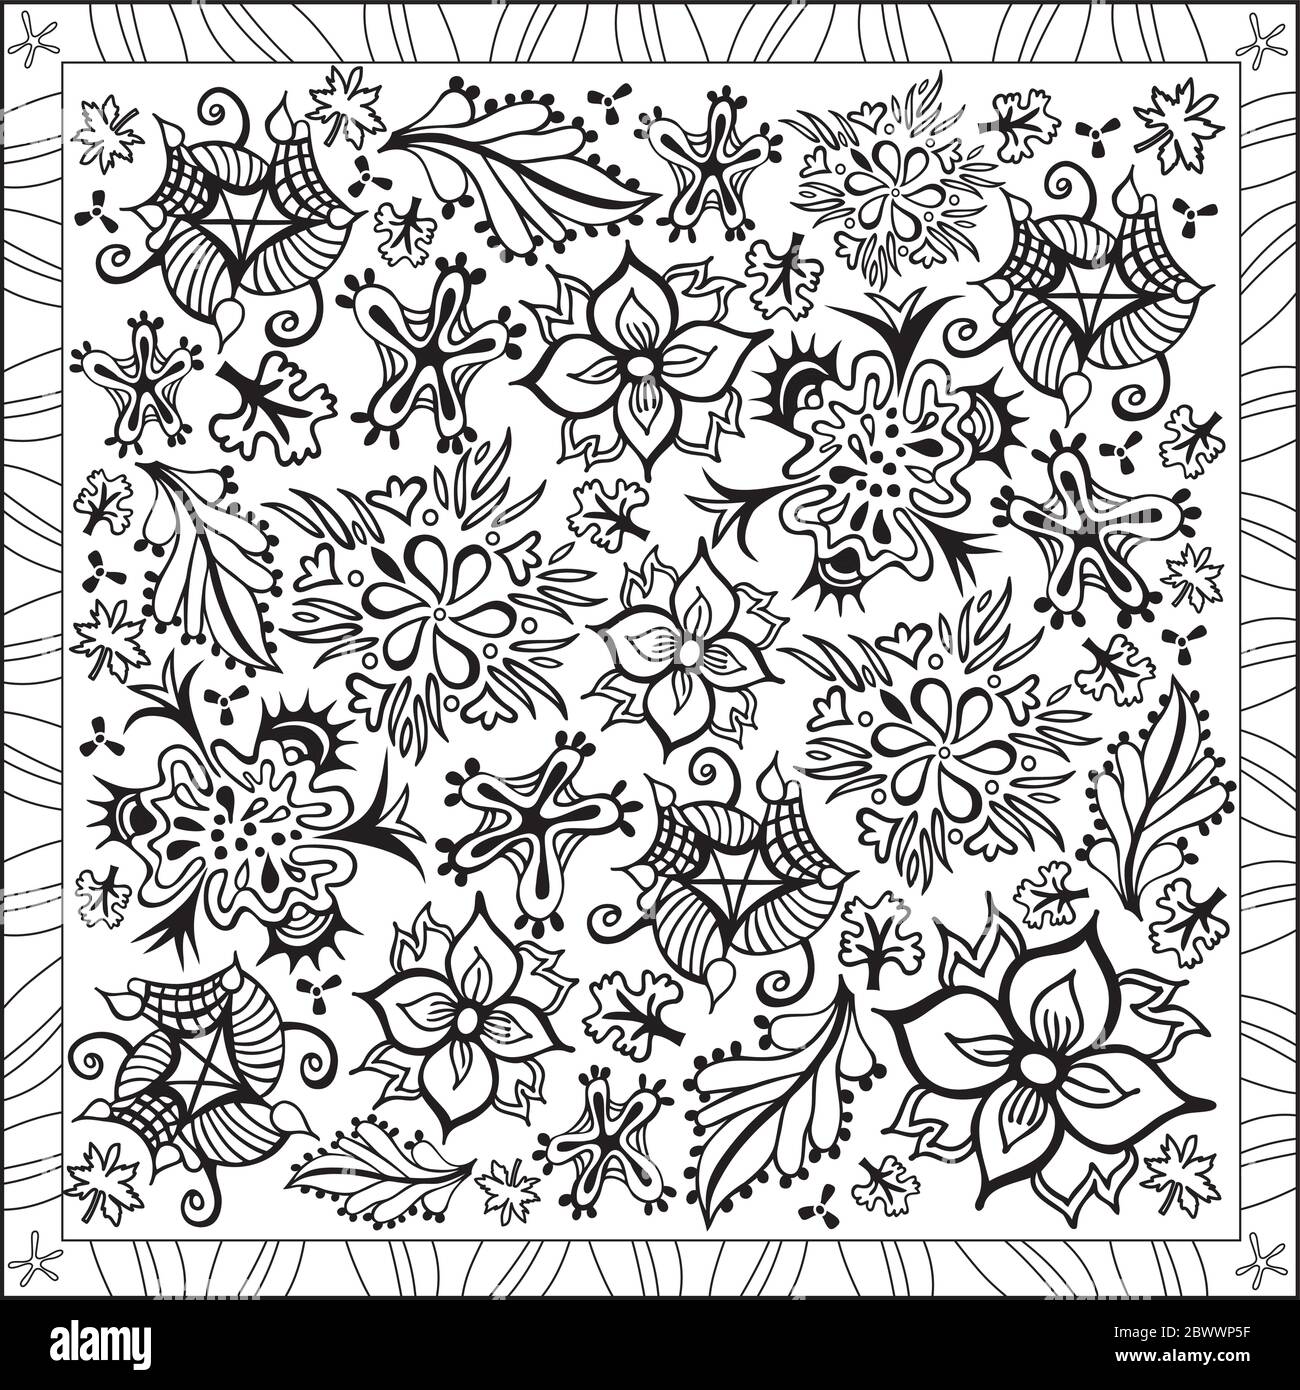 Colorazione pagina Illustrazione in formato quadrato, fiori e foglie vari, disegno di Foliage - Blossom - Bianco e nero Illustrazione Vettoriale